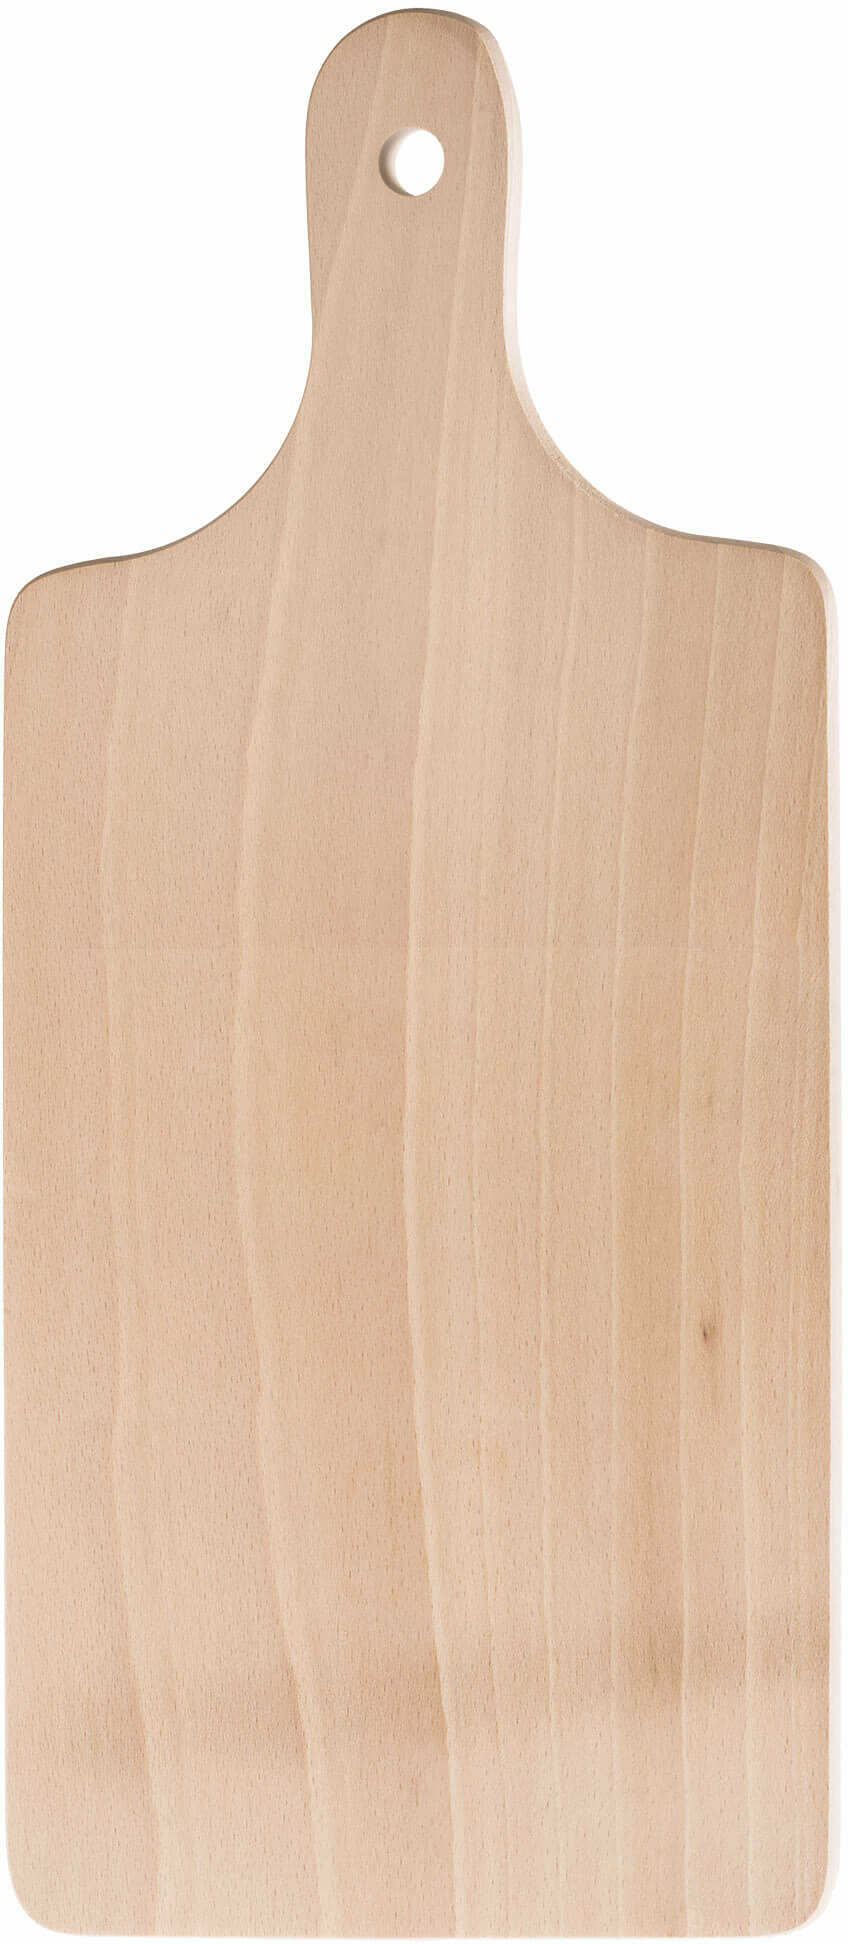 Drewniana deska kuchenna do krojenia 36 x 16 cm